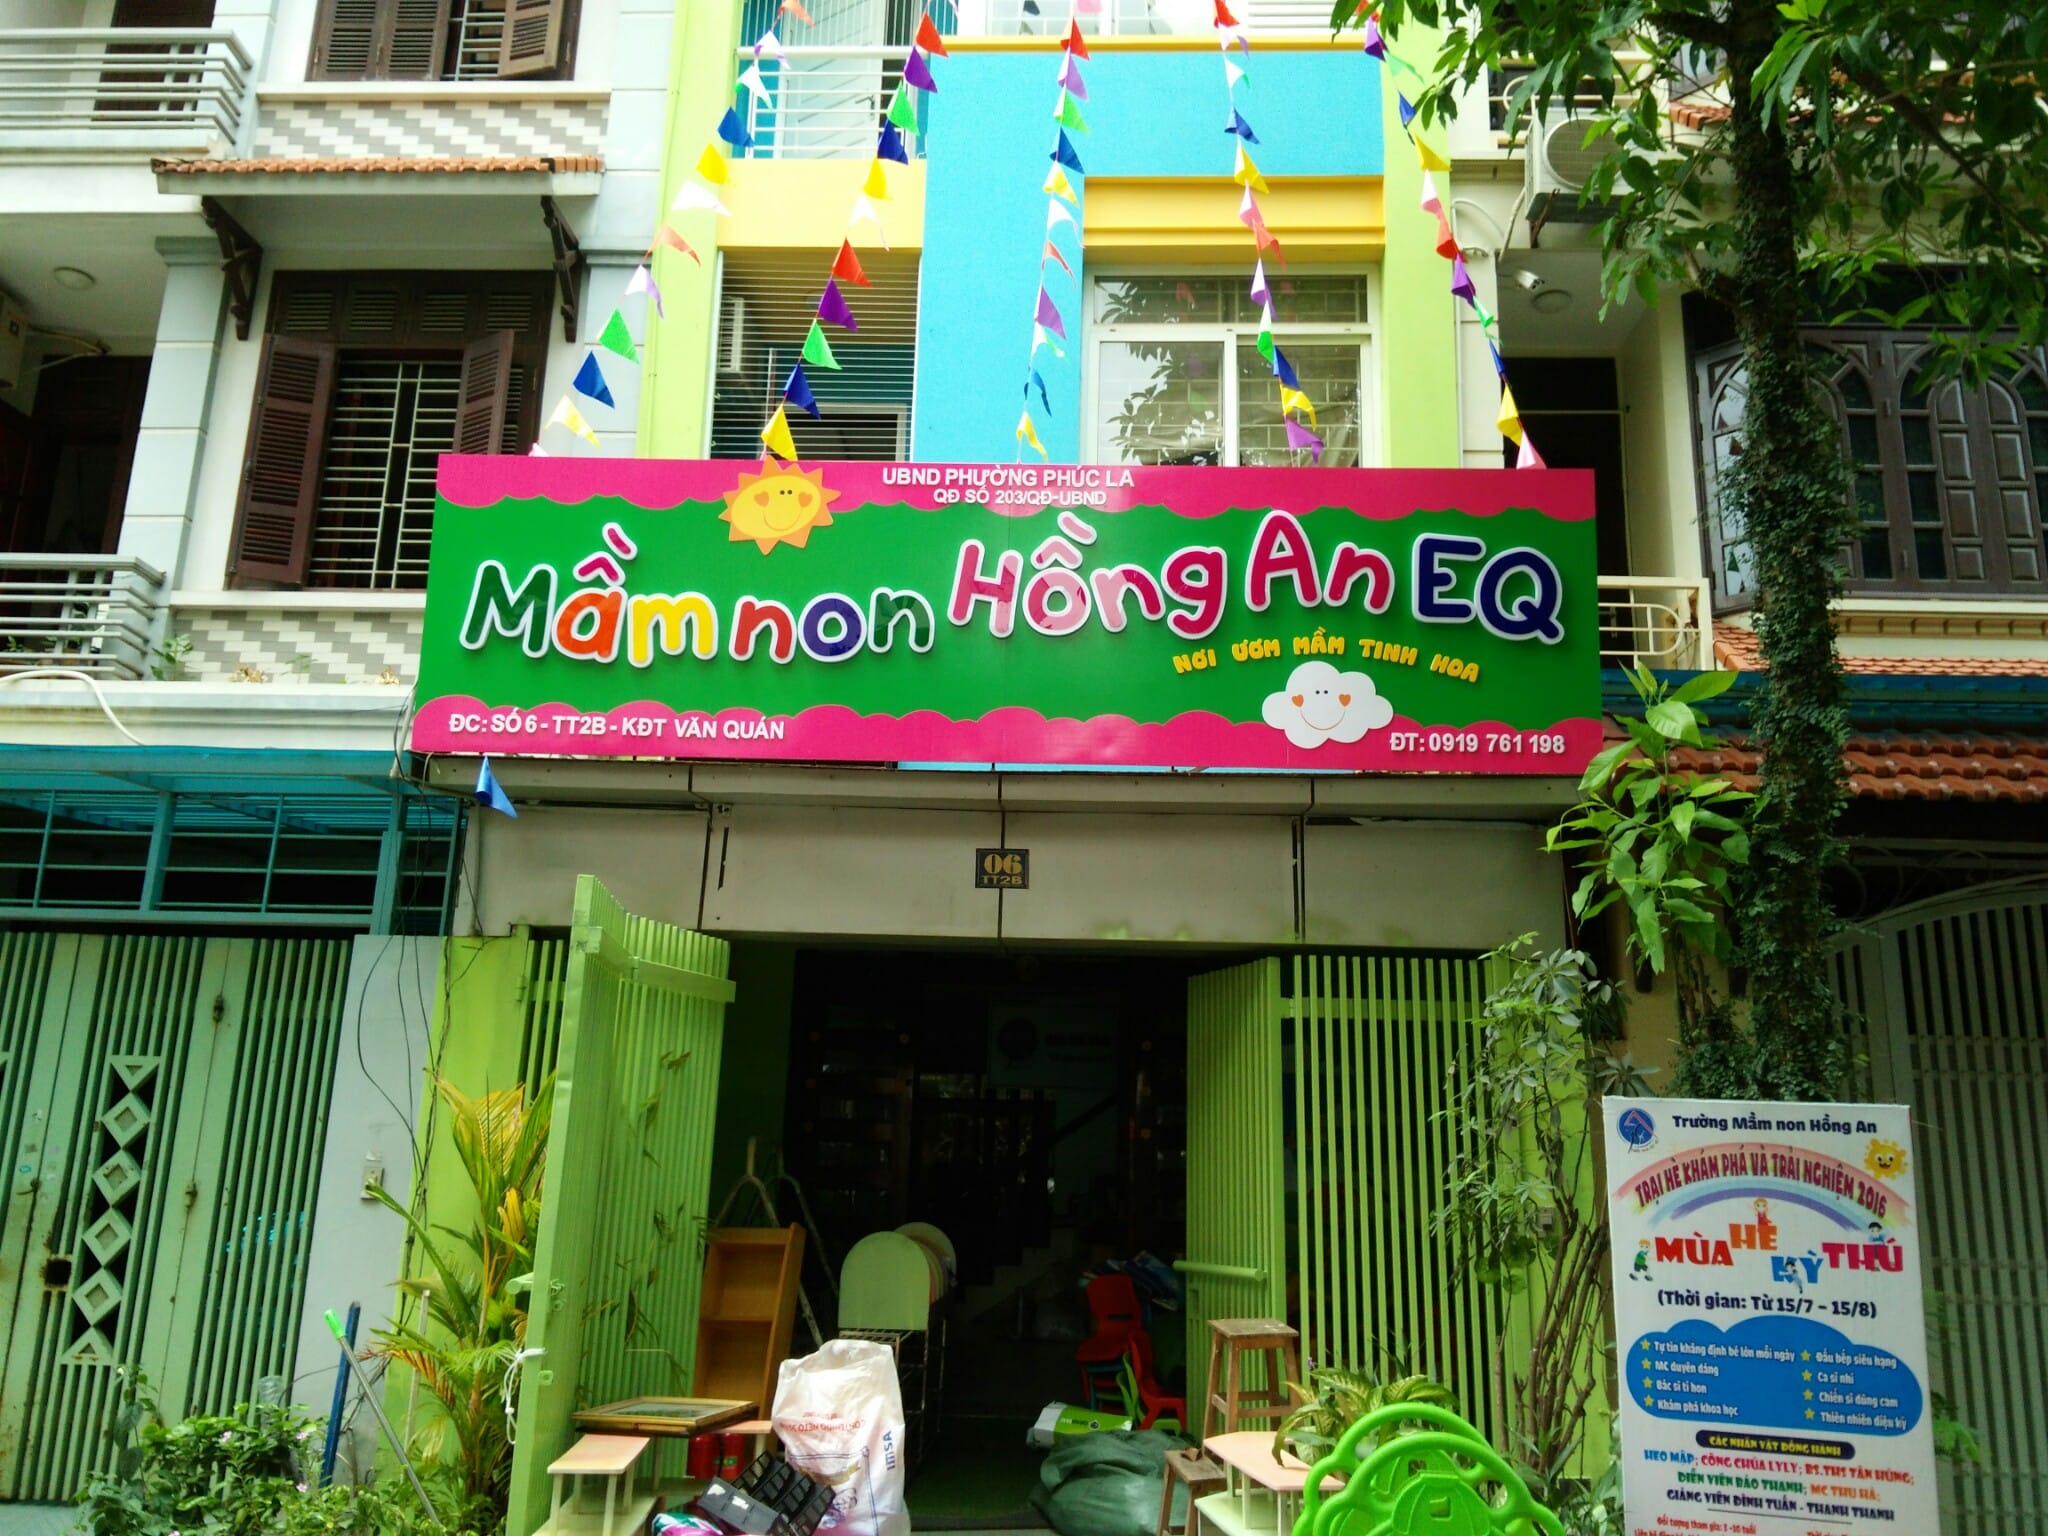 Thi công biển hiệu trường mầm non tại Hà Nội